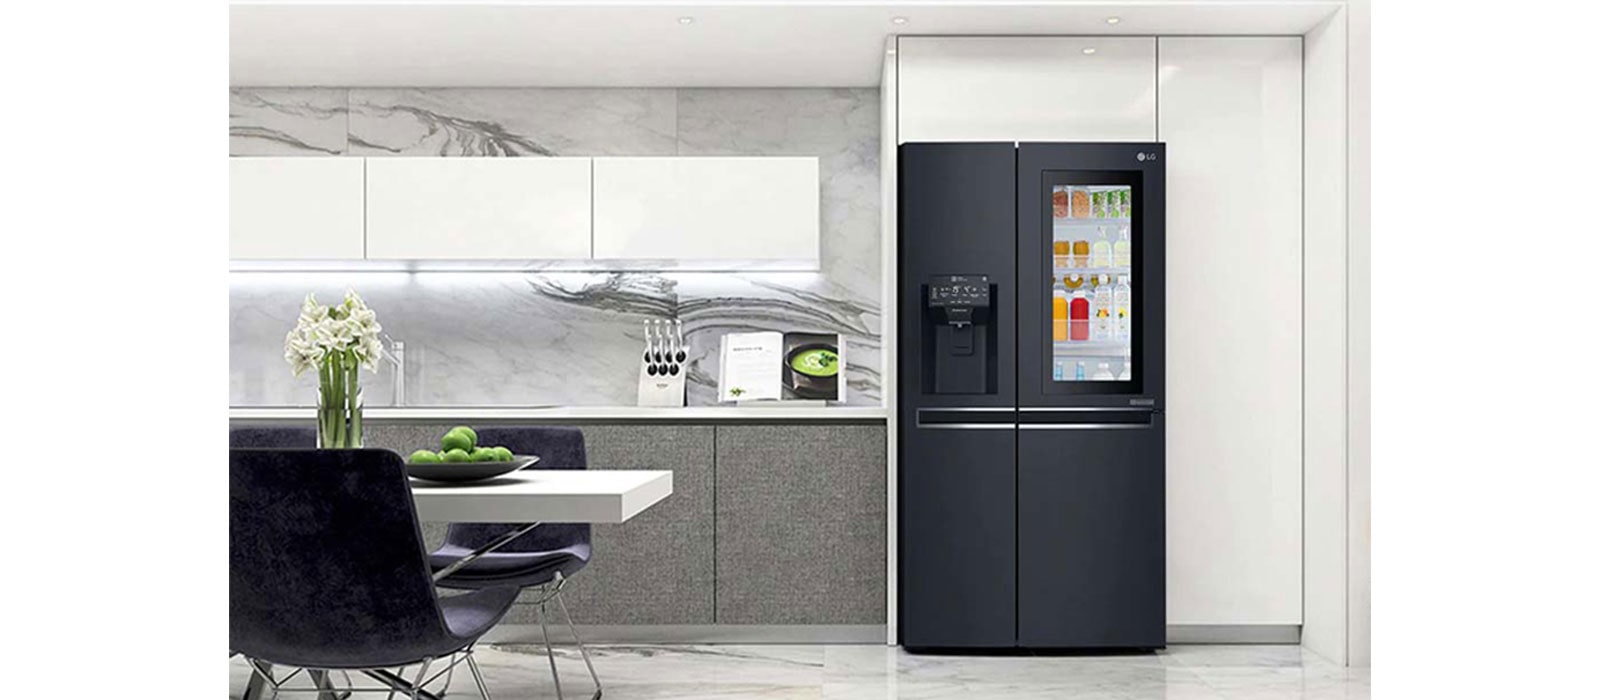 Medidas de refrigeradores: ¿Cuál elegir?